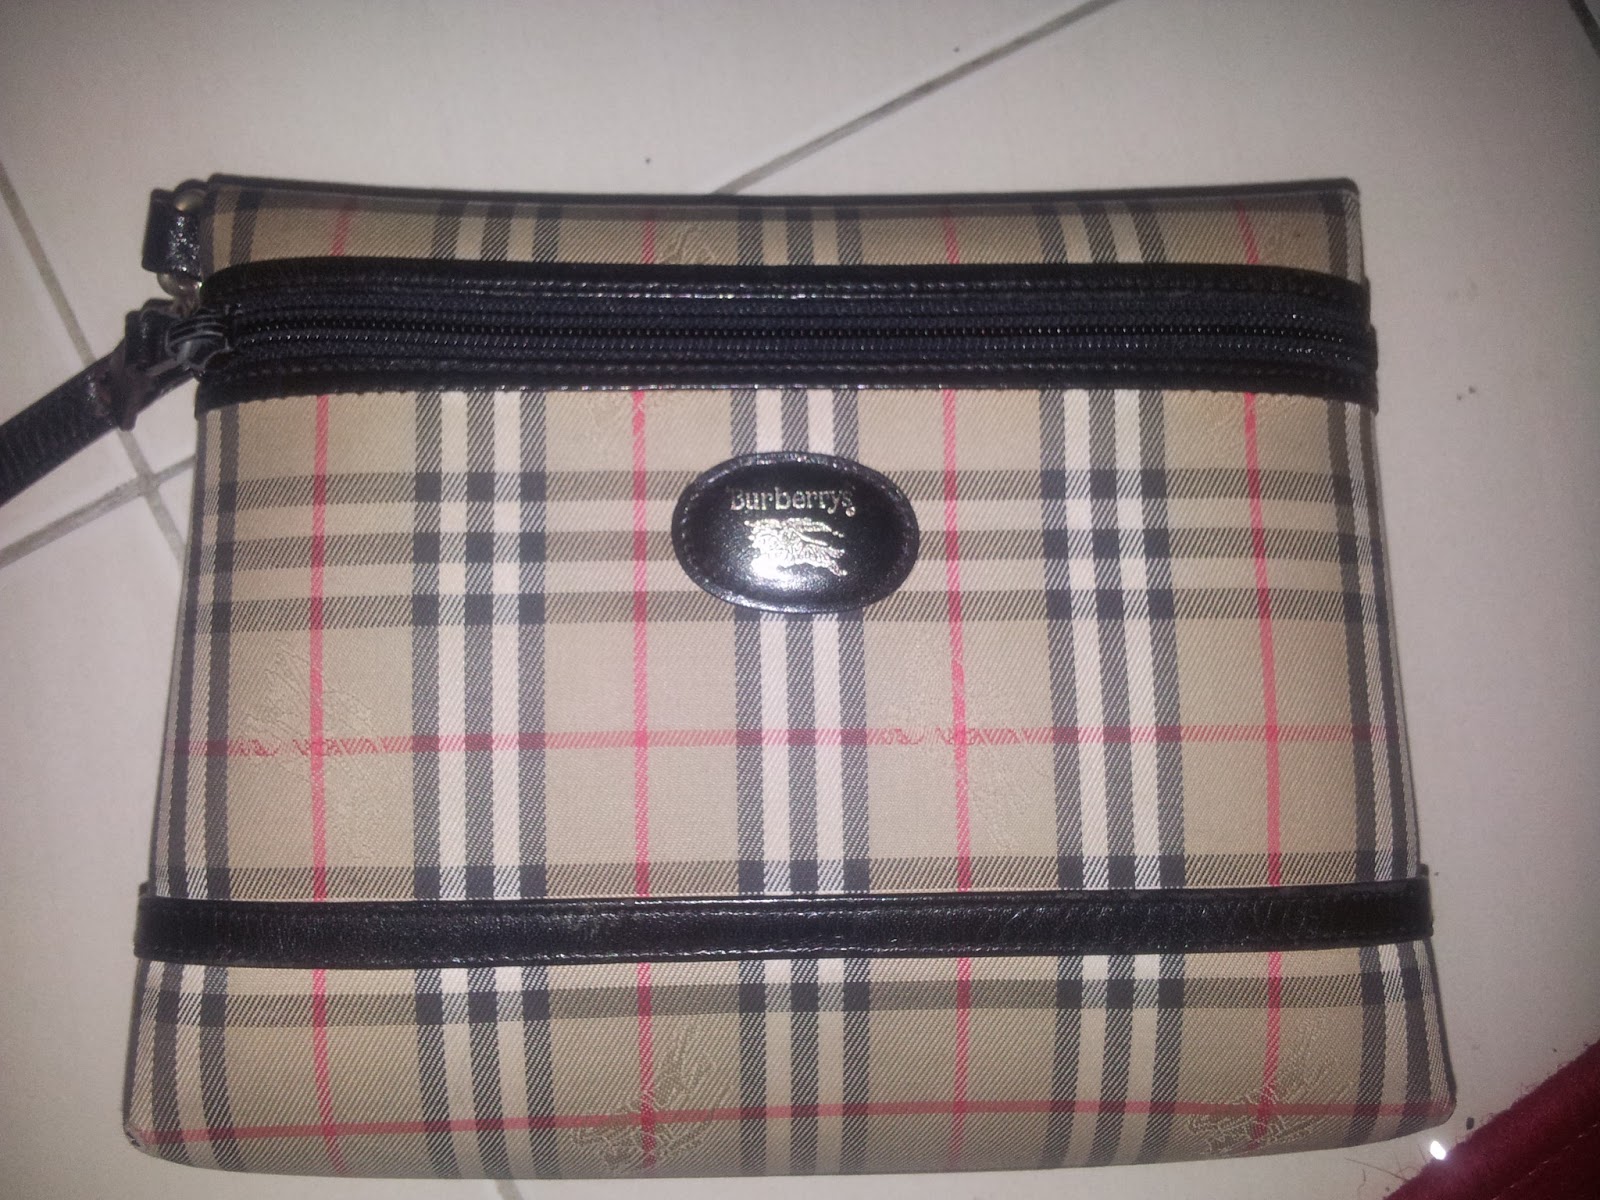 pArT tiMe bUnDLe: Authentic Burberry Clutch Bag (SOLD)